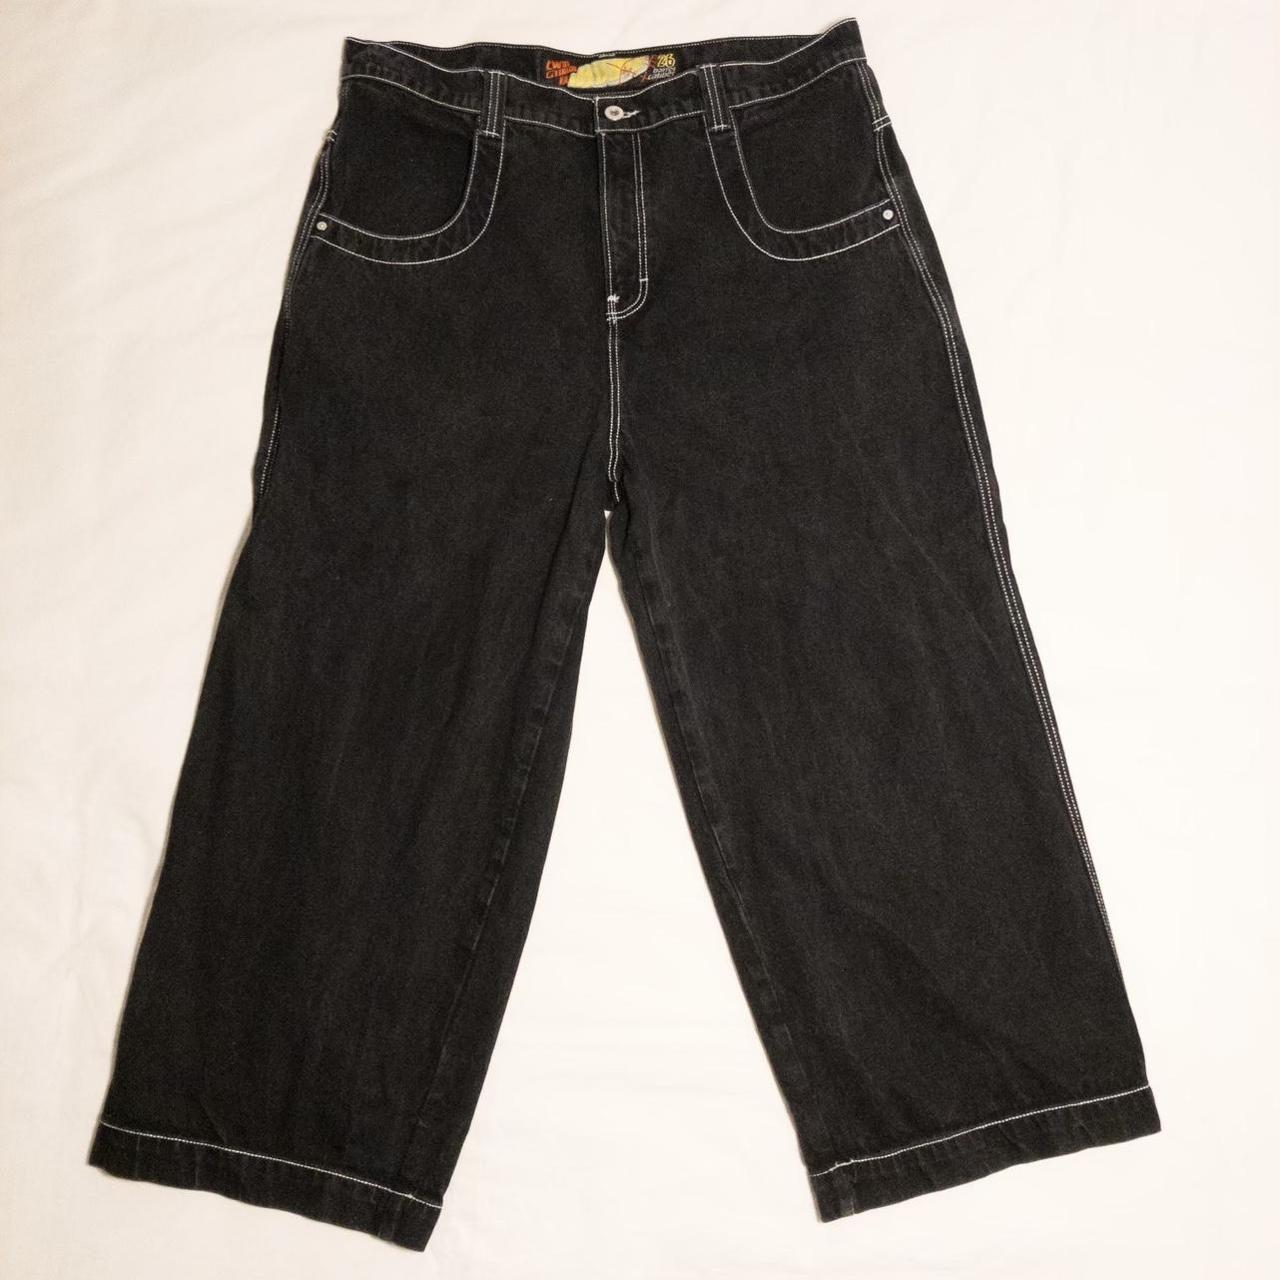 42w /30L JNCO Jeans #jnco - Depop